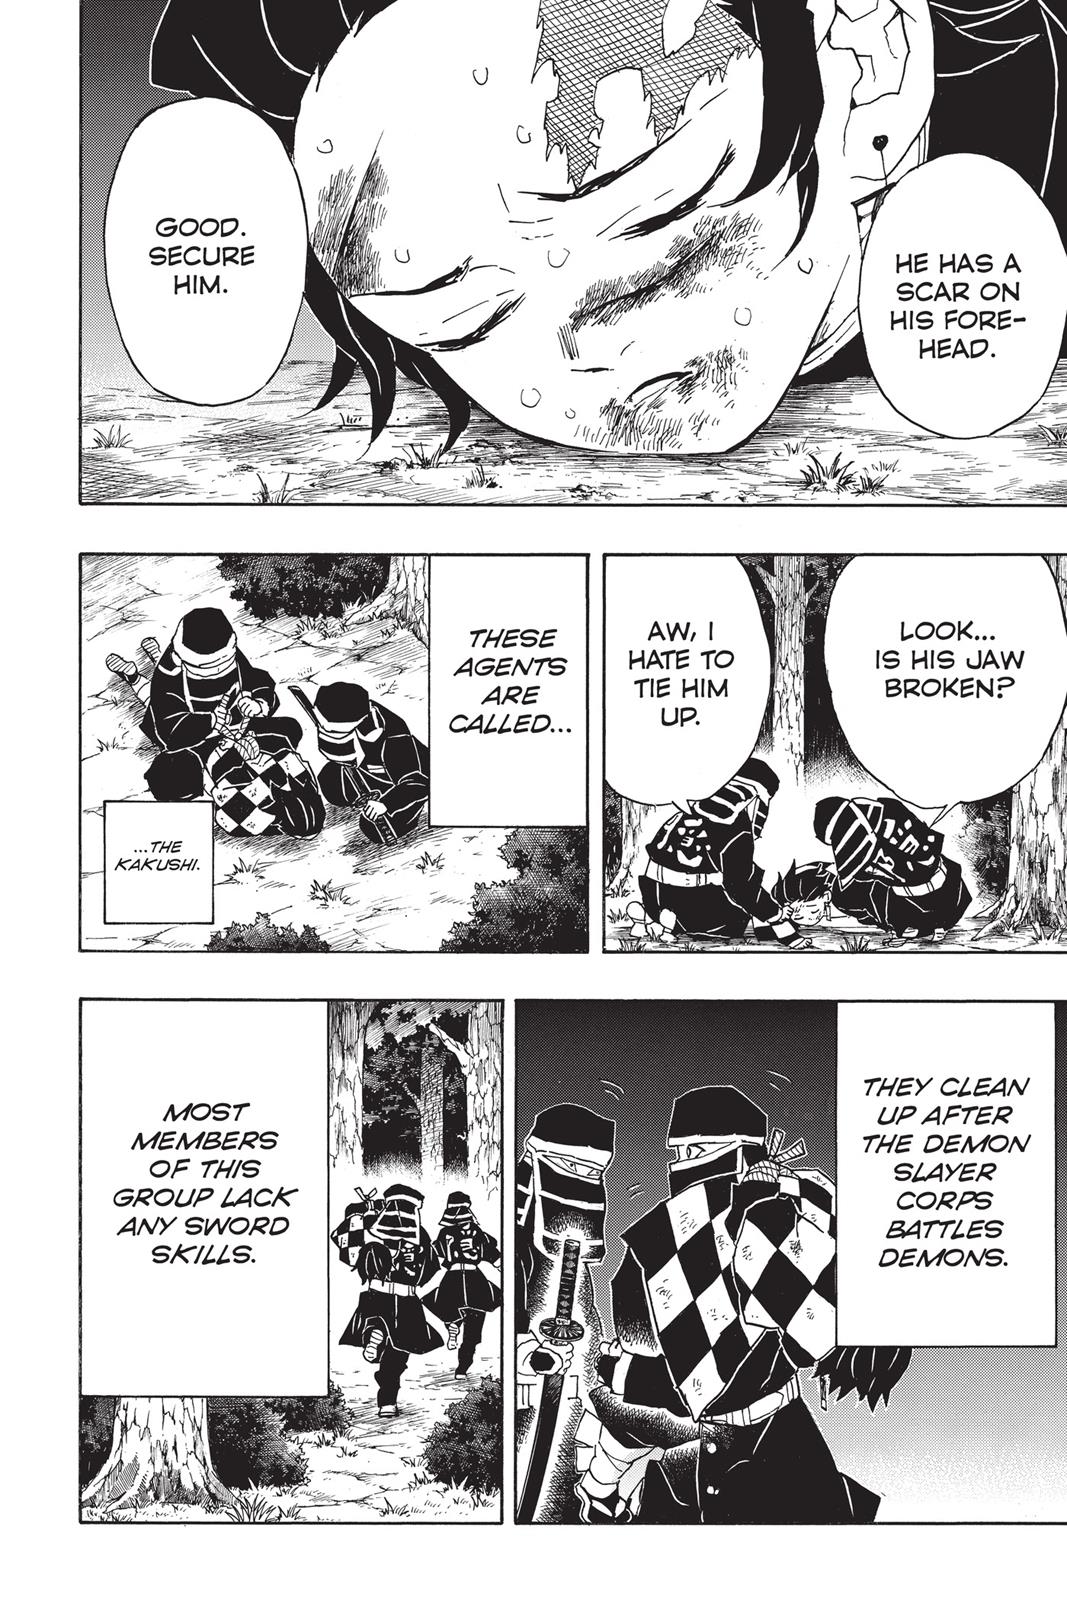 Demon Slayer Manga Manga Chapter - 44 - image 15